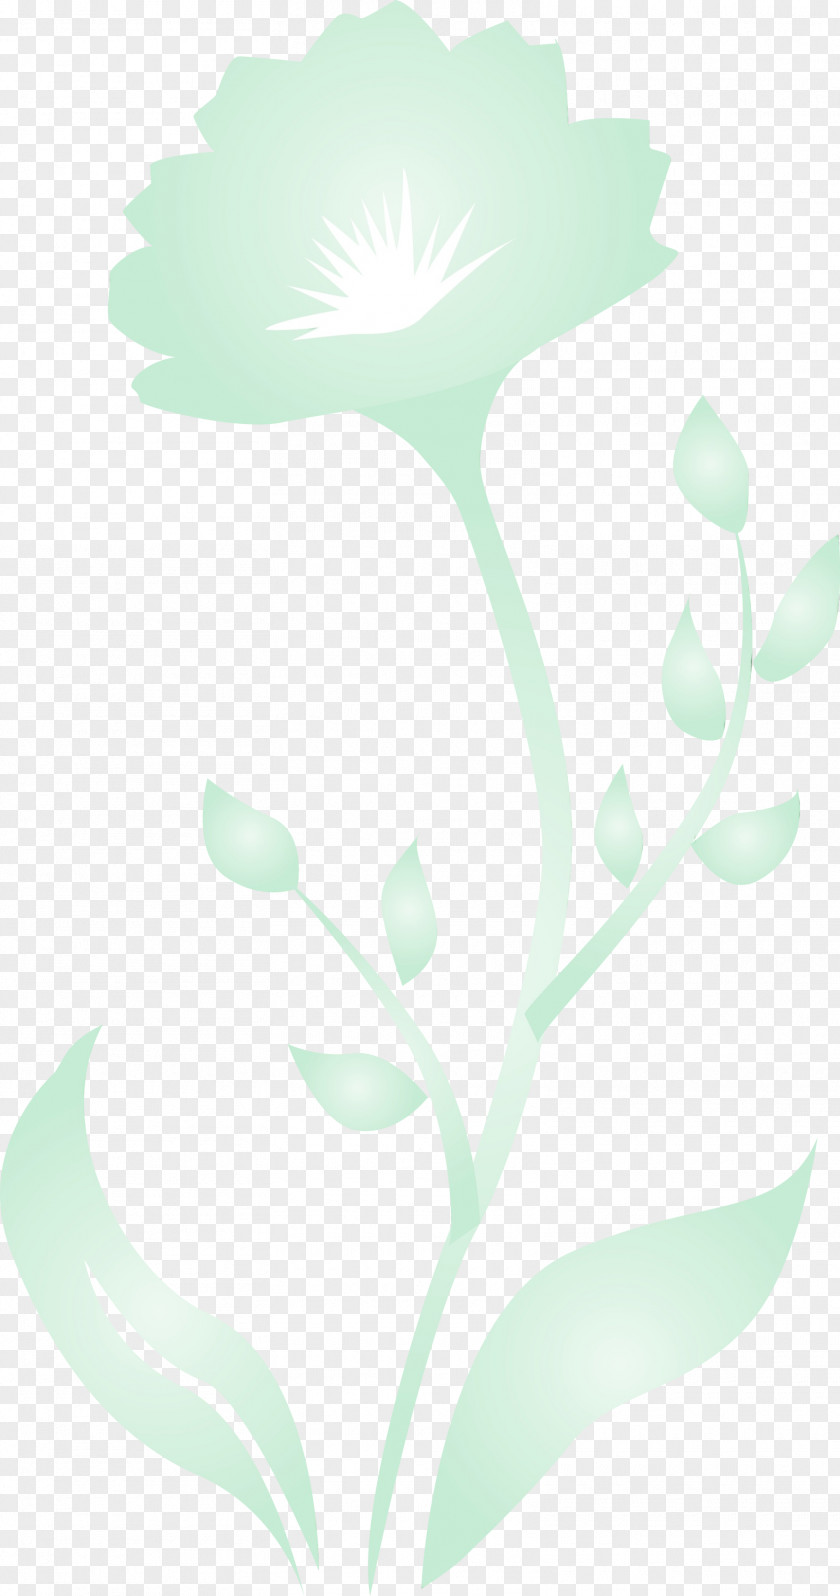 Green Leaf Plant Pedicel Flower PNG